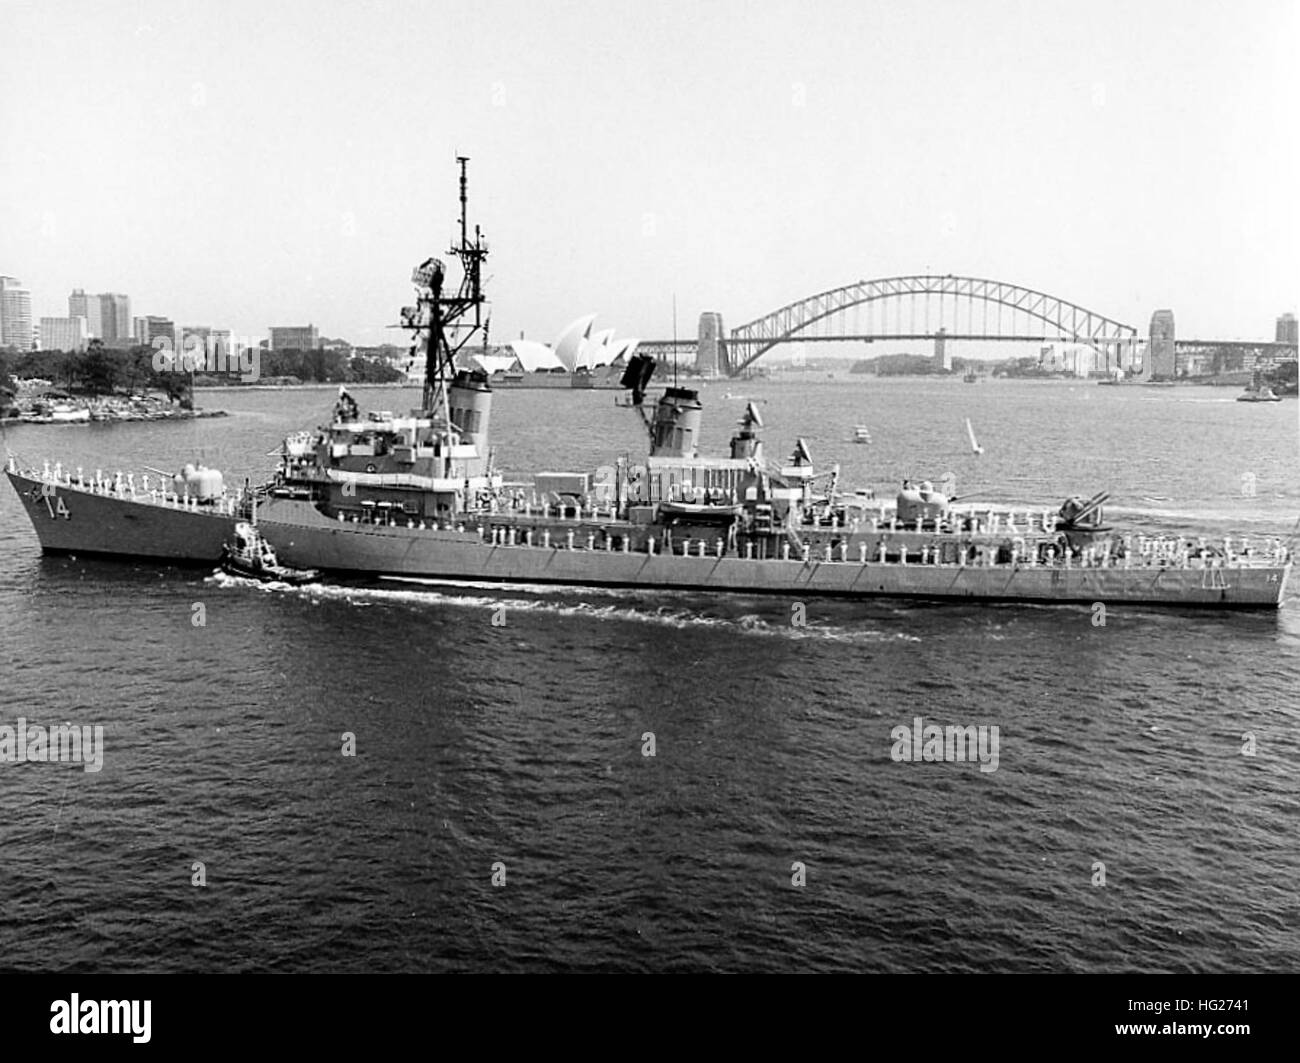 USS Buchanan (DDG-14) visite de Sydney, New South Wales, Australie, en 1985. L'Opéra de Sydney et Sydney Harbour Bridge sont à l'arrière-plan. Photographie de la Marine américaine officielle, provenant des collections de l'histoire navale et du patrimoine. USS Buchanan (DDG-14) visite de Sydney c1985 Banque D'Images